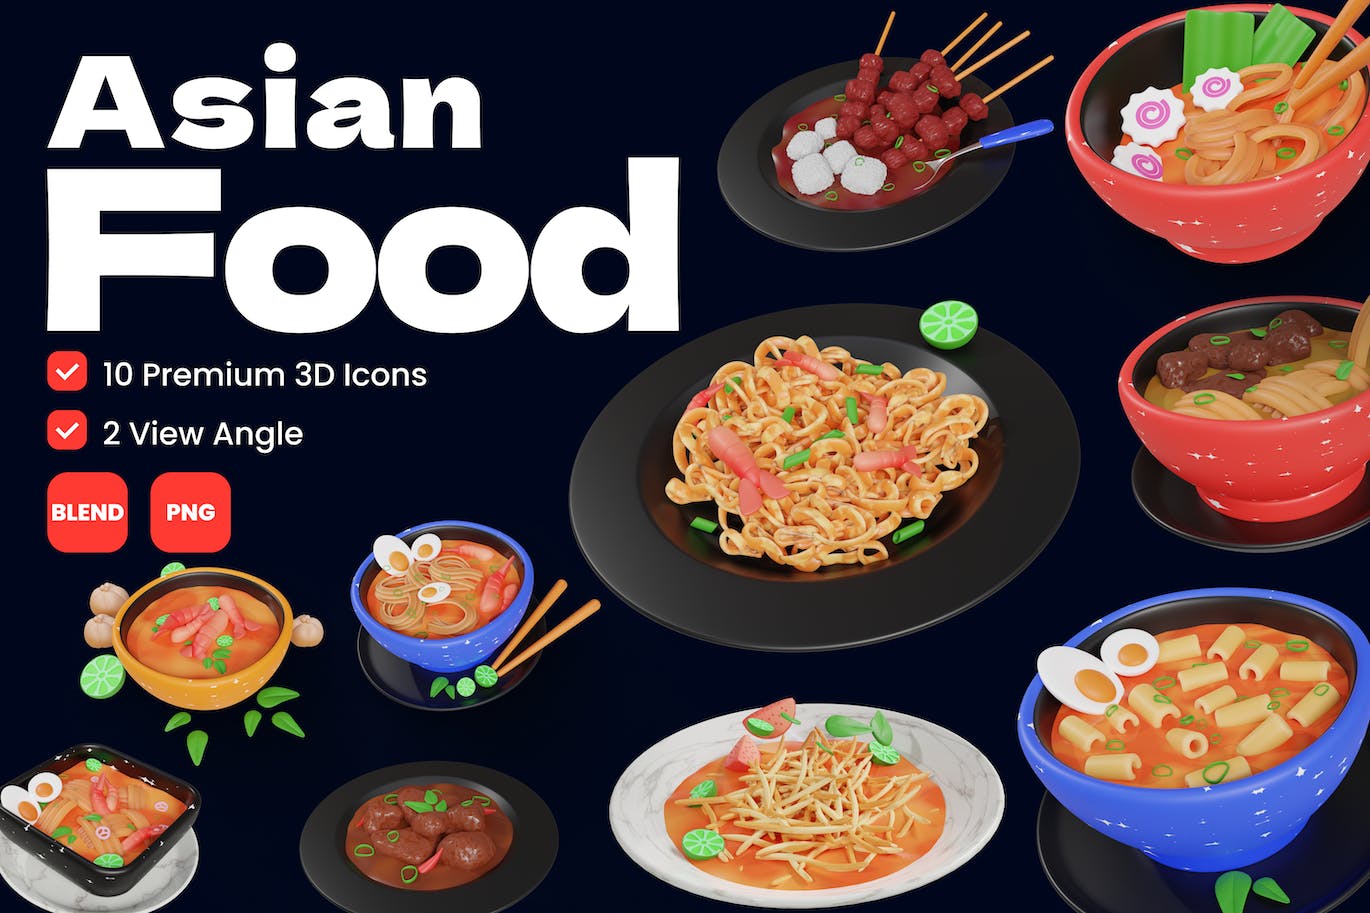 亚洲食品 3D 图标图标 (PNG,Blend)